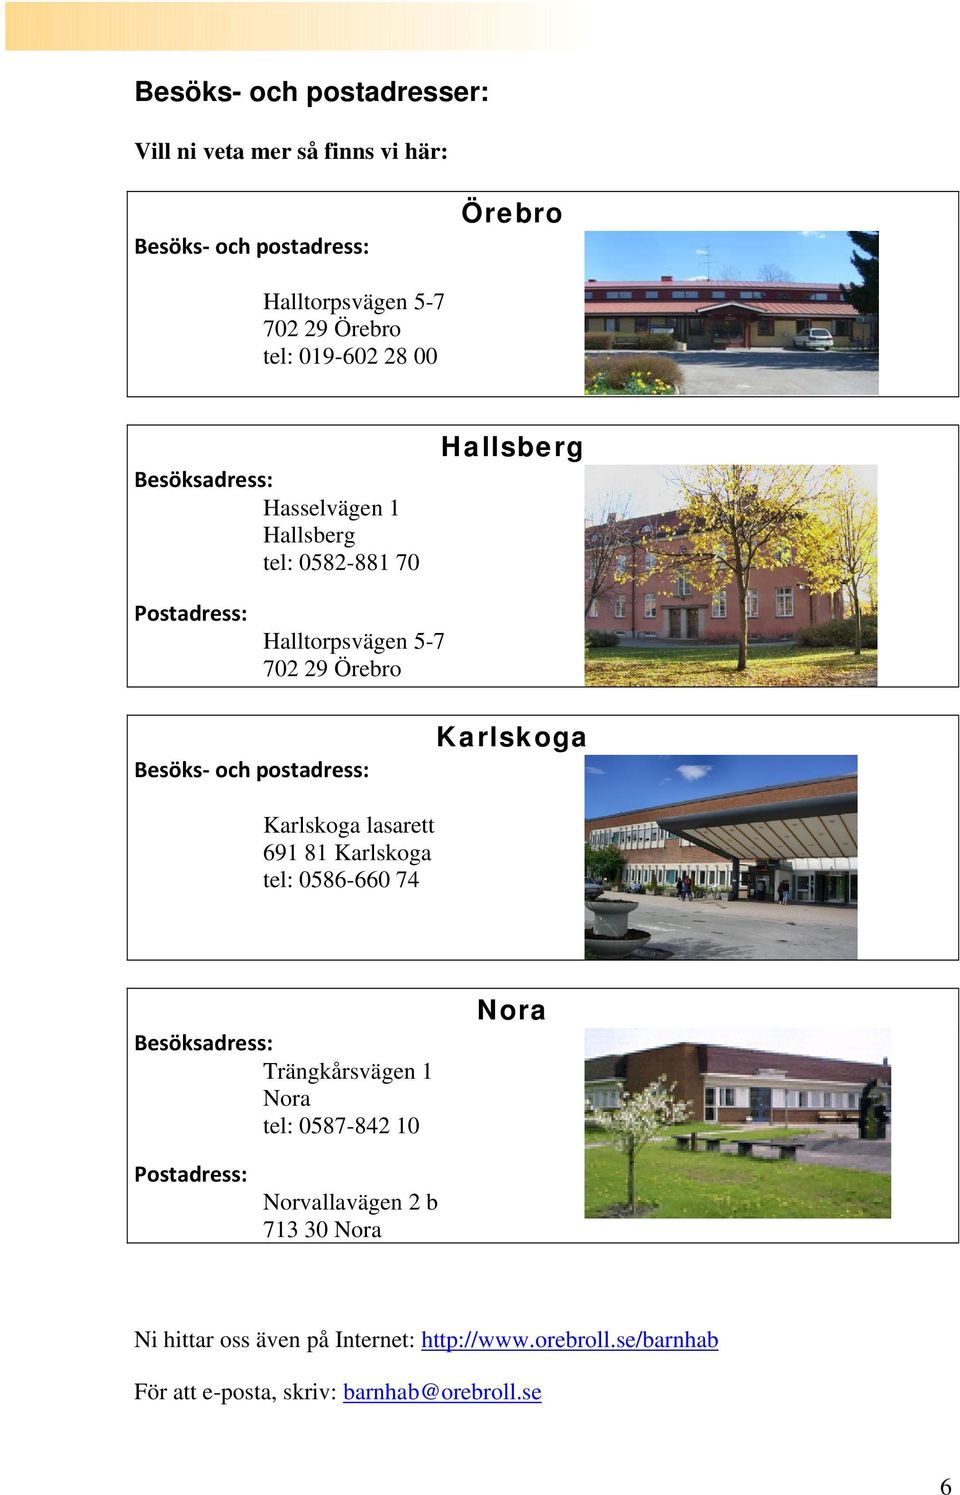 postadress: Karlskoga Karlskoga lasarett 691 81 Karlskoga tel: 0586-660 74 Besöksadress: Trängkårsvägen 1 Nora tel: 0587-842 10 Nora